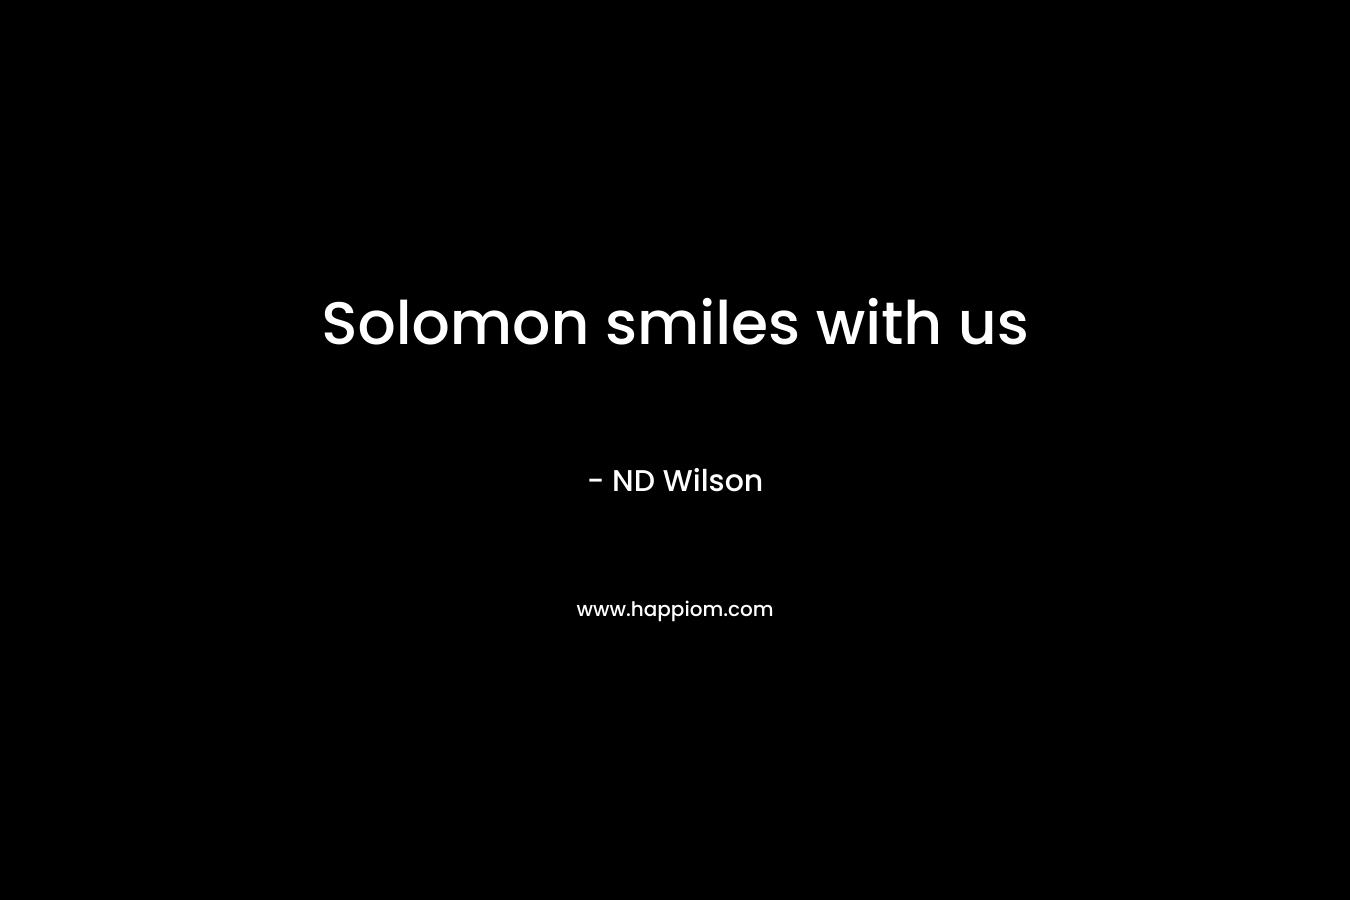 Solomon smiles with us